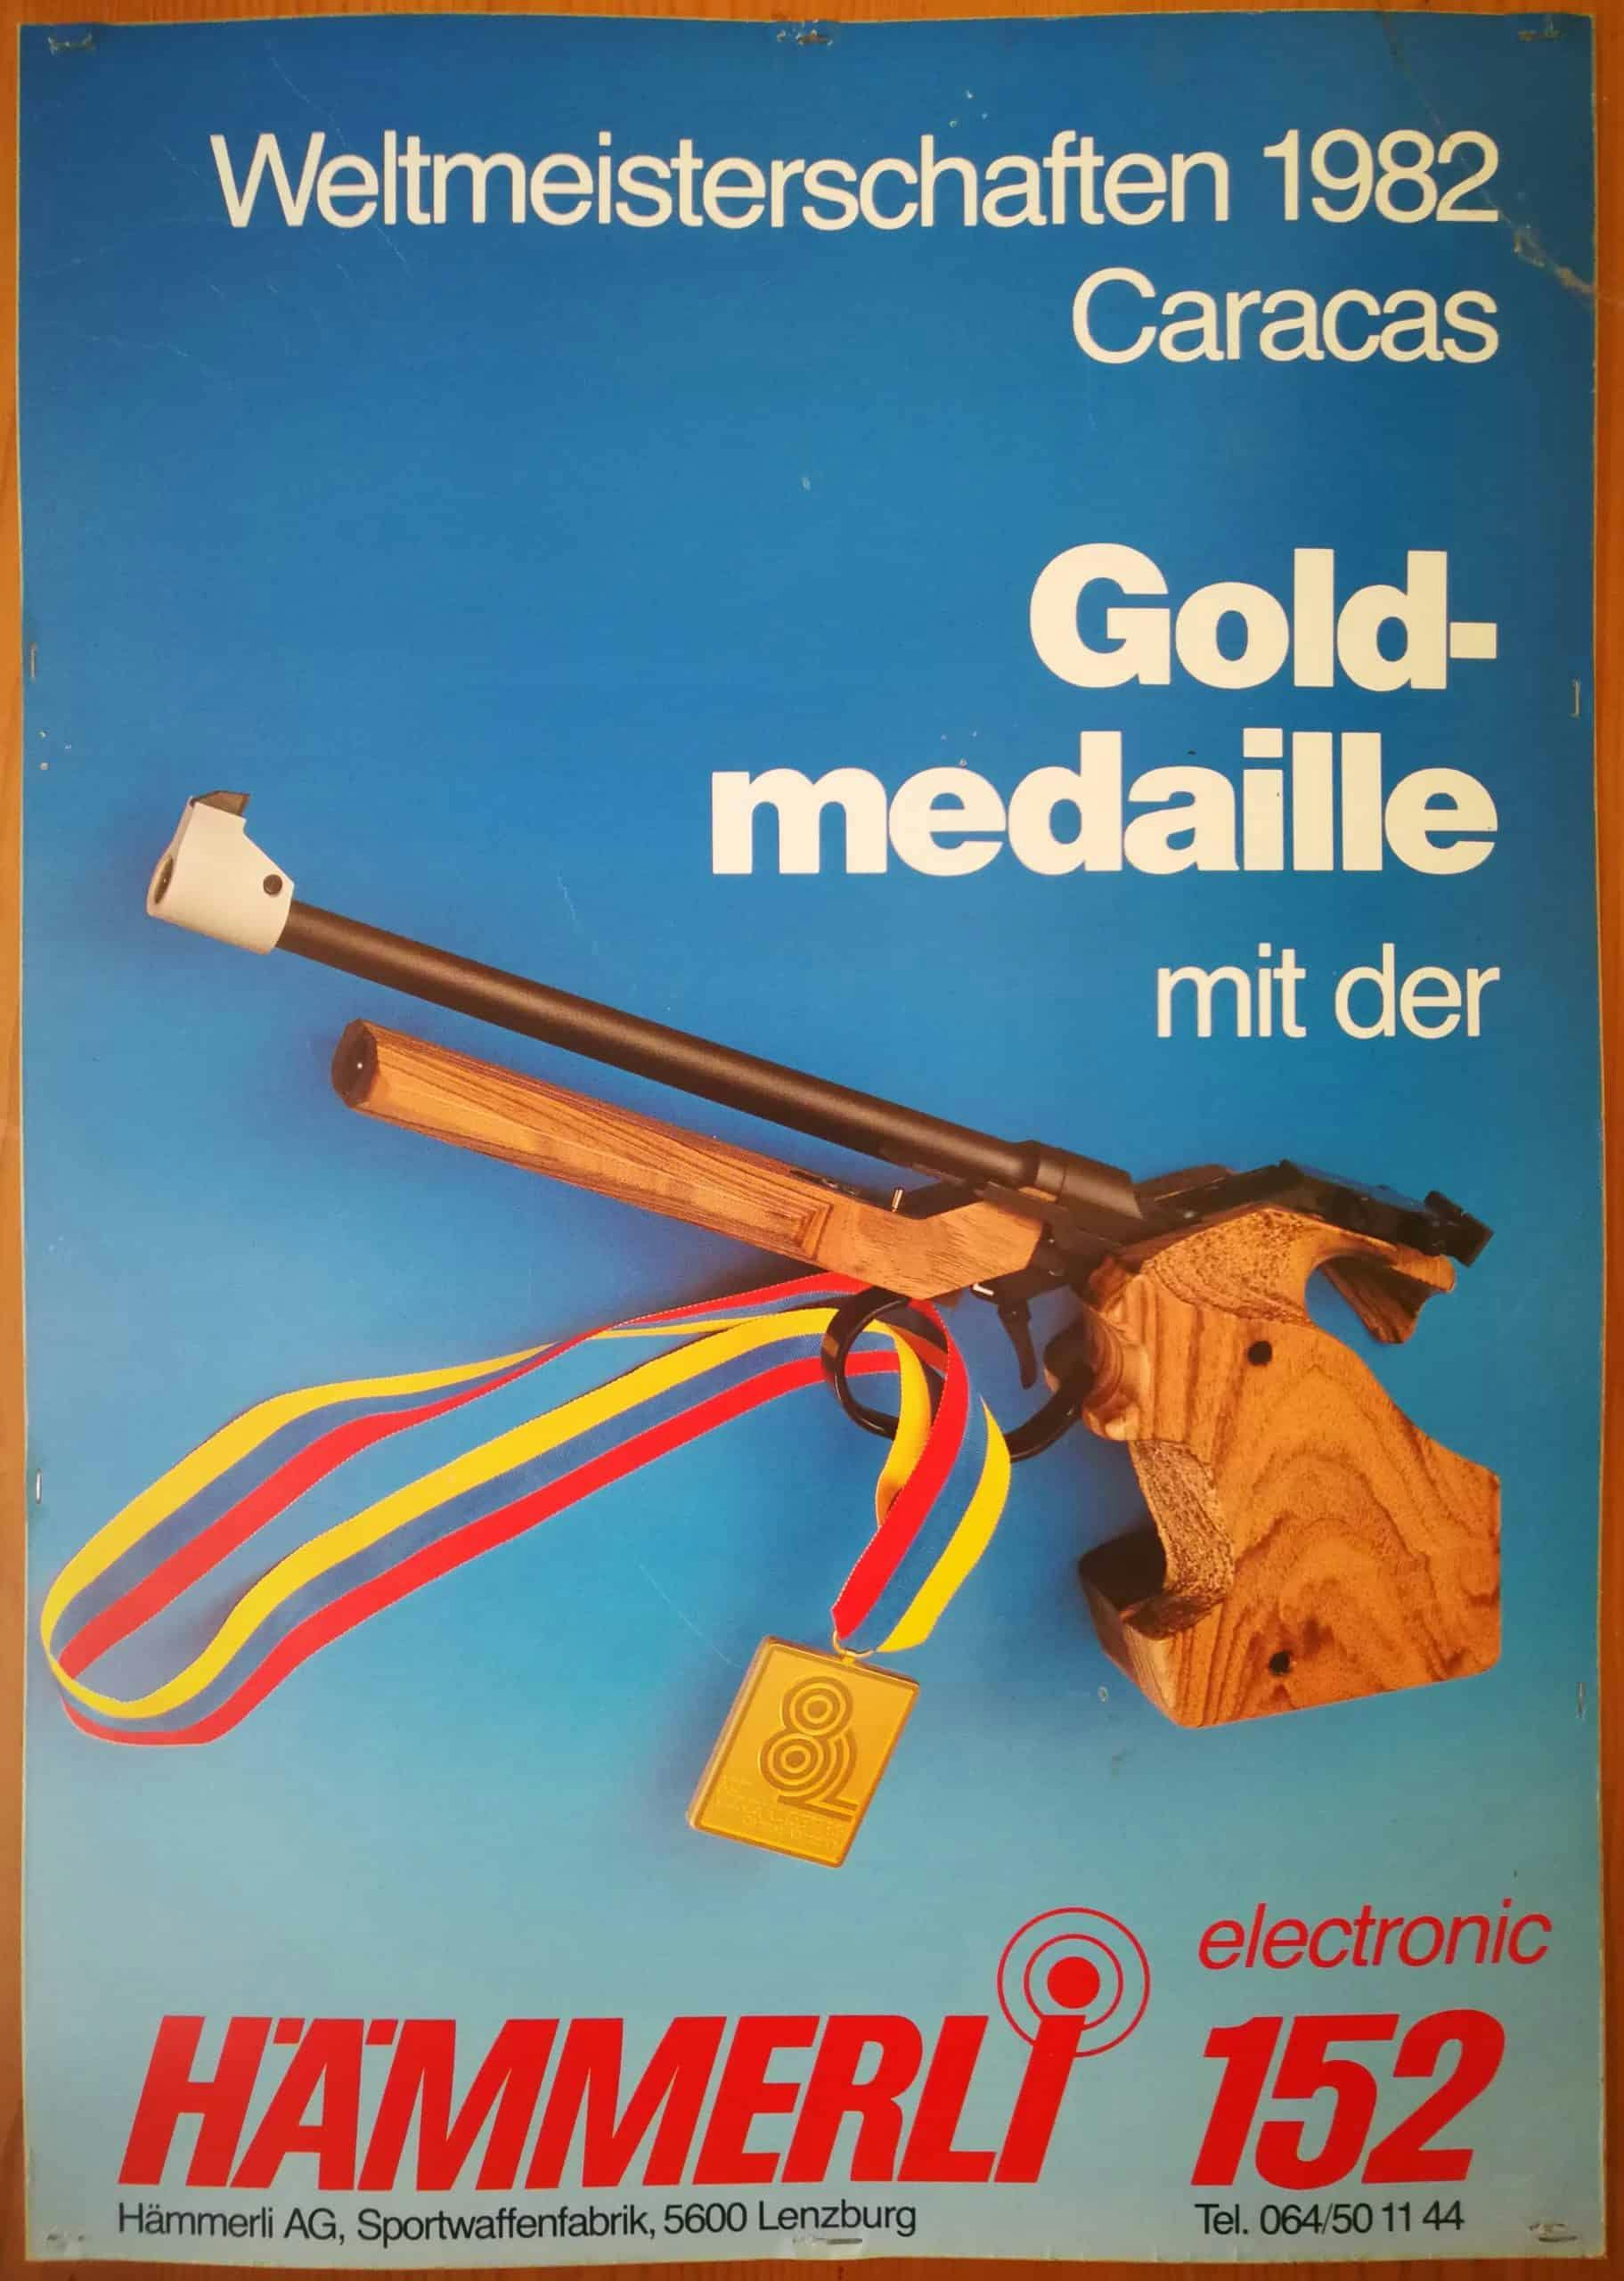 Mit dieser Hämmerli Freipistole holte sich der Schwede Ragnar Skanåker 1982 den Weltmeistertitel über 50m Freipistole.